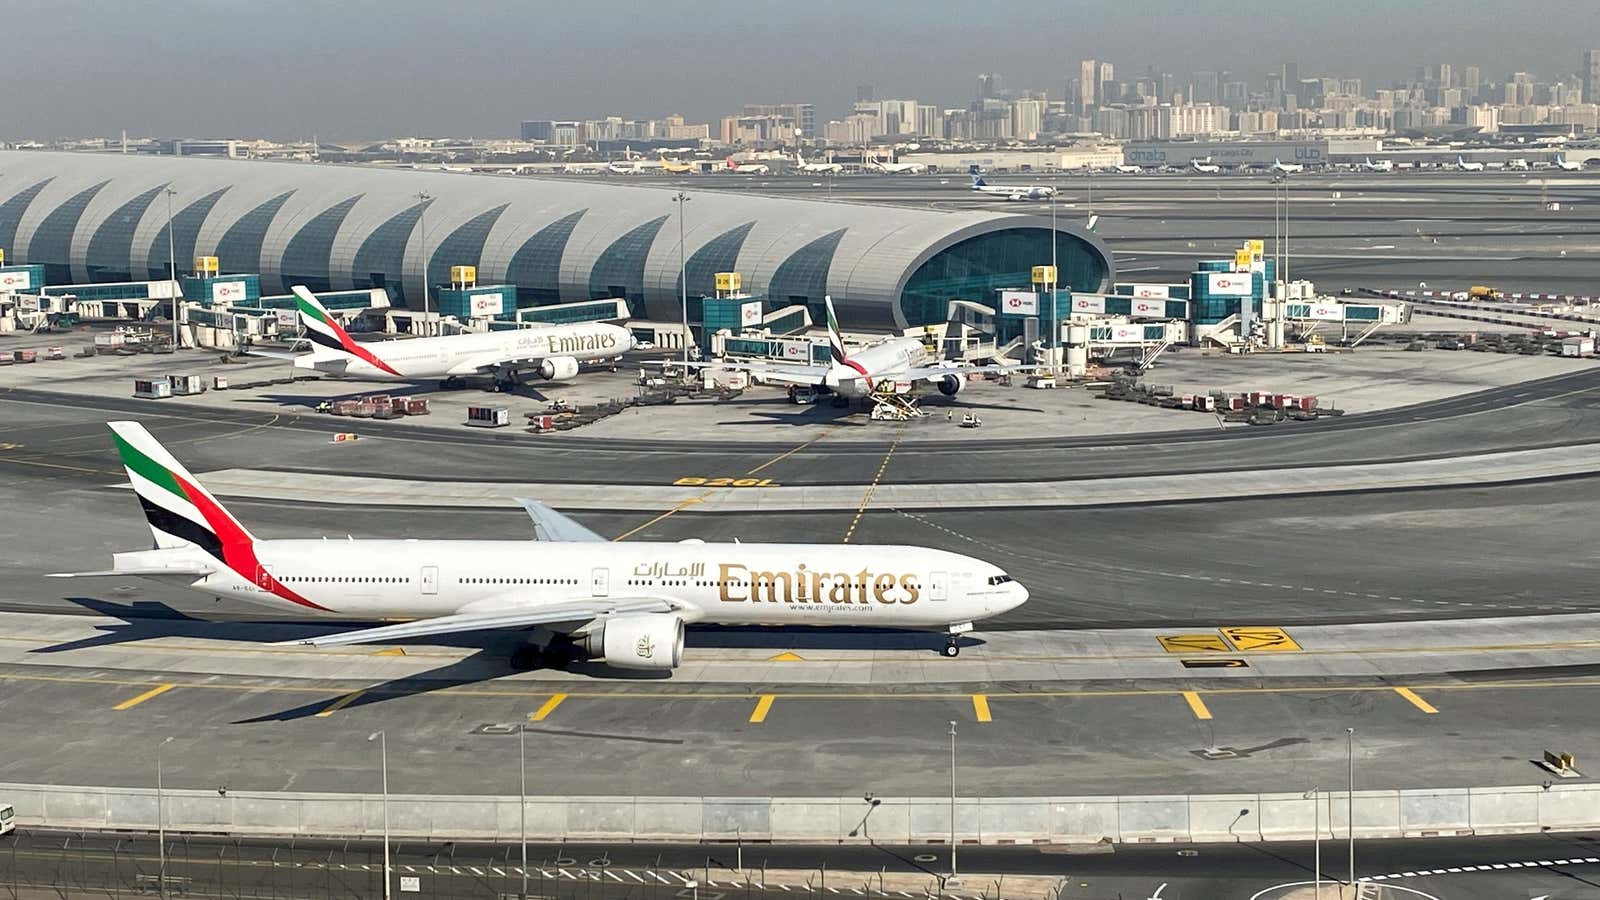 Taken off the Emirates